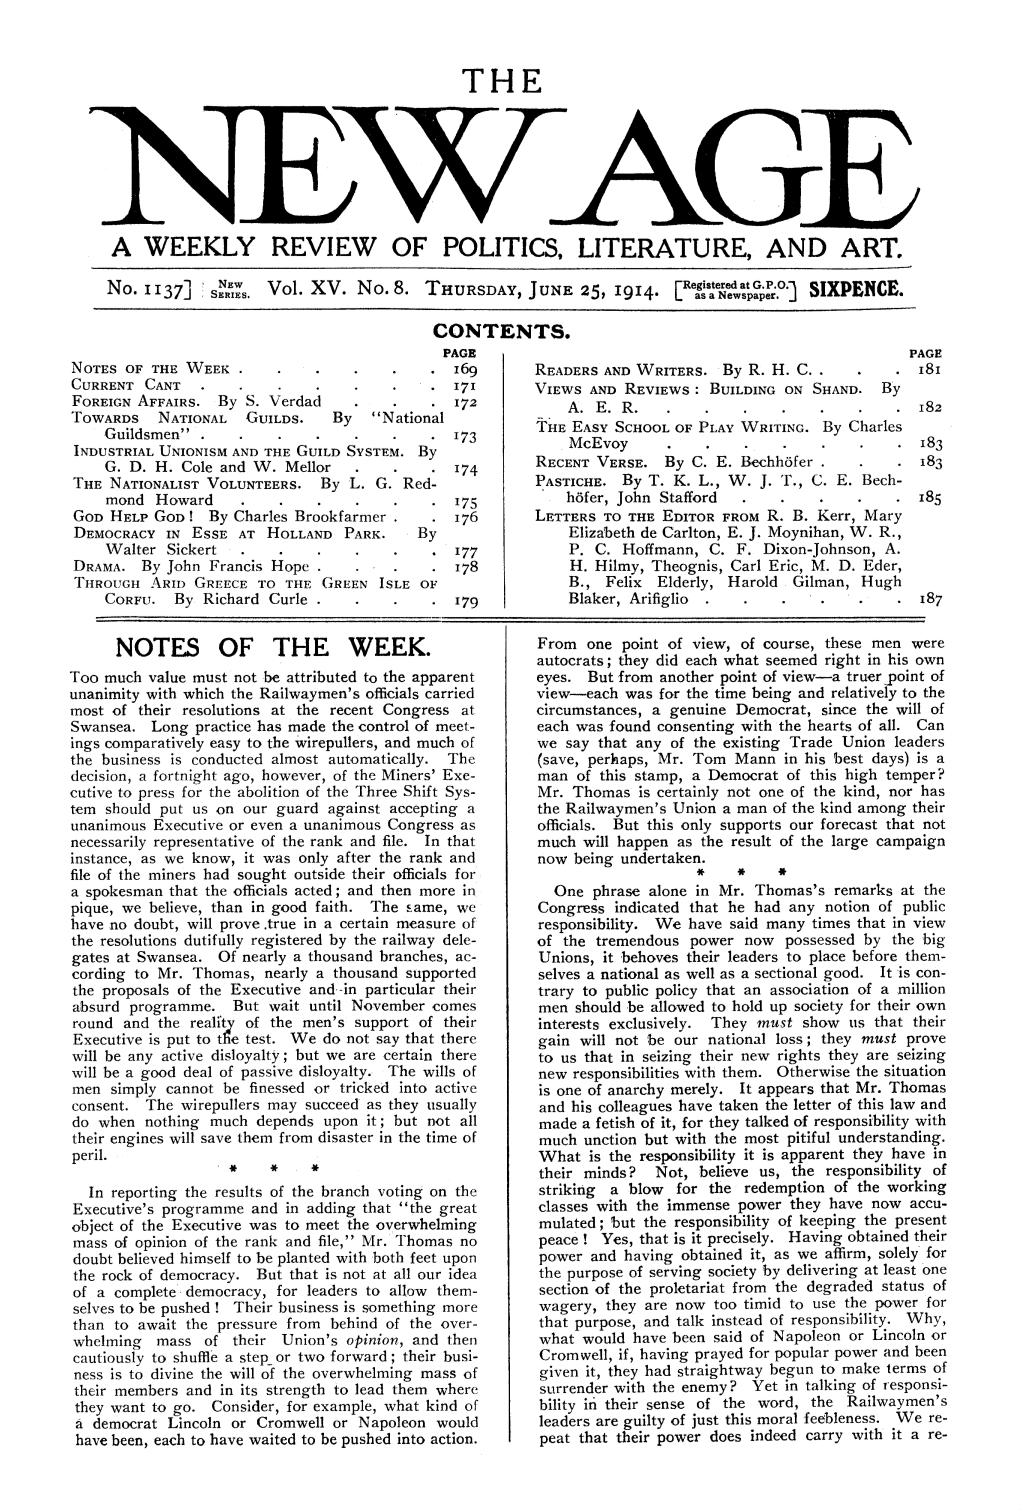 New Age, Vol. 15, No.8, June 25, 1914